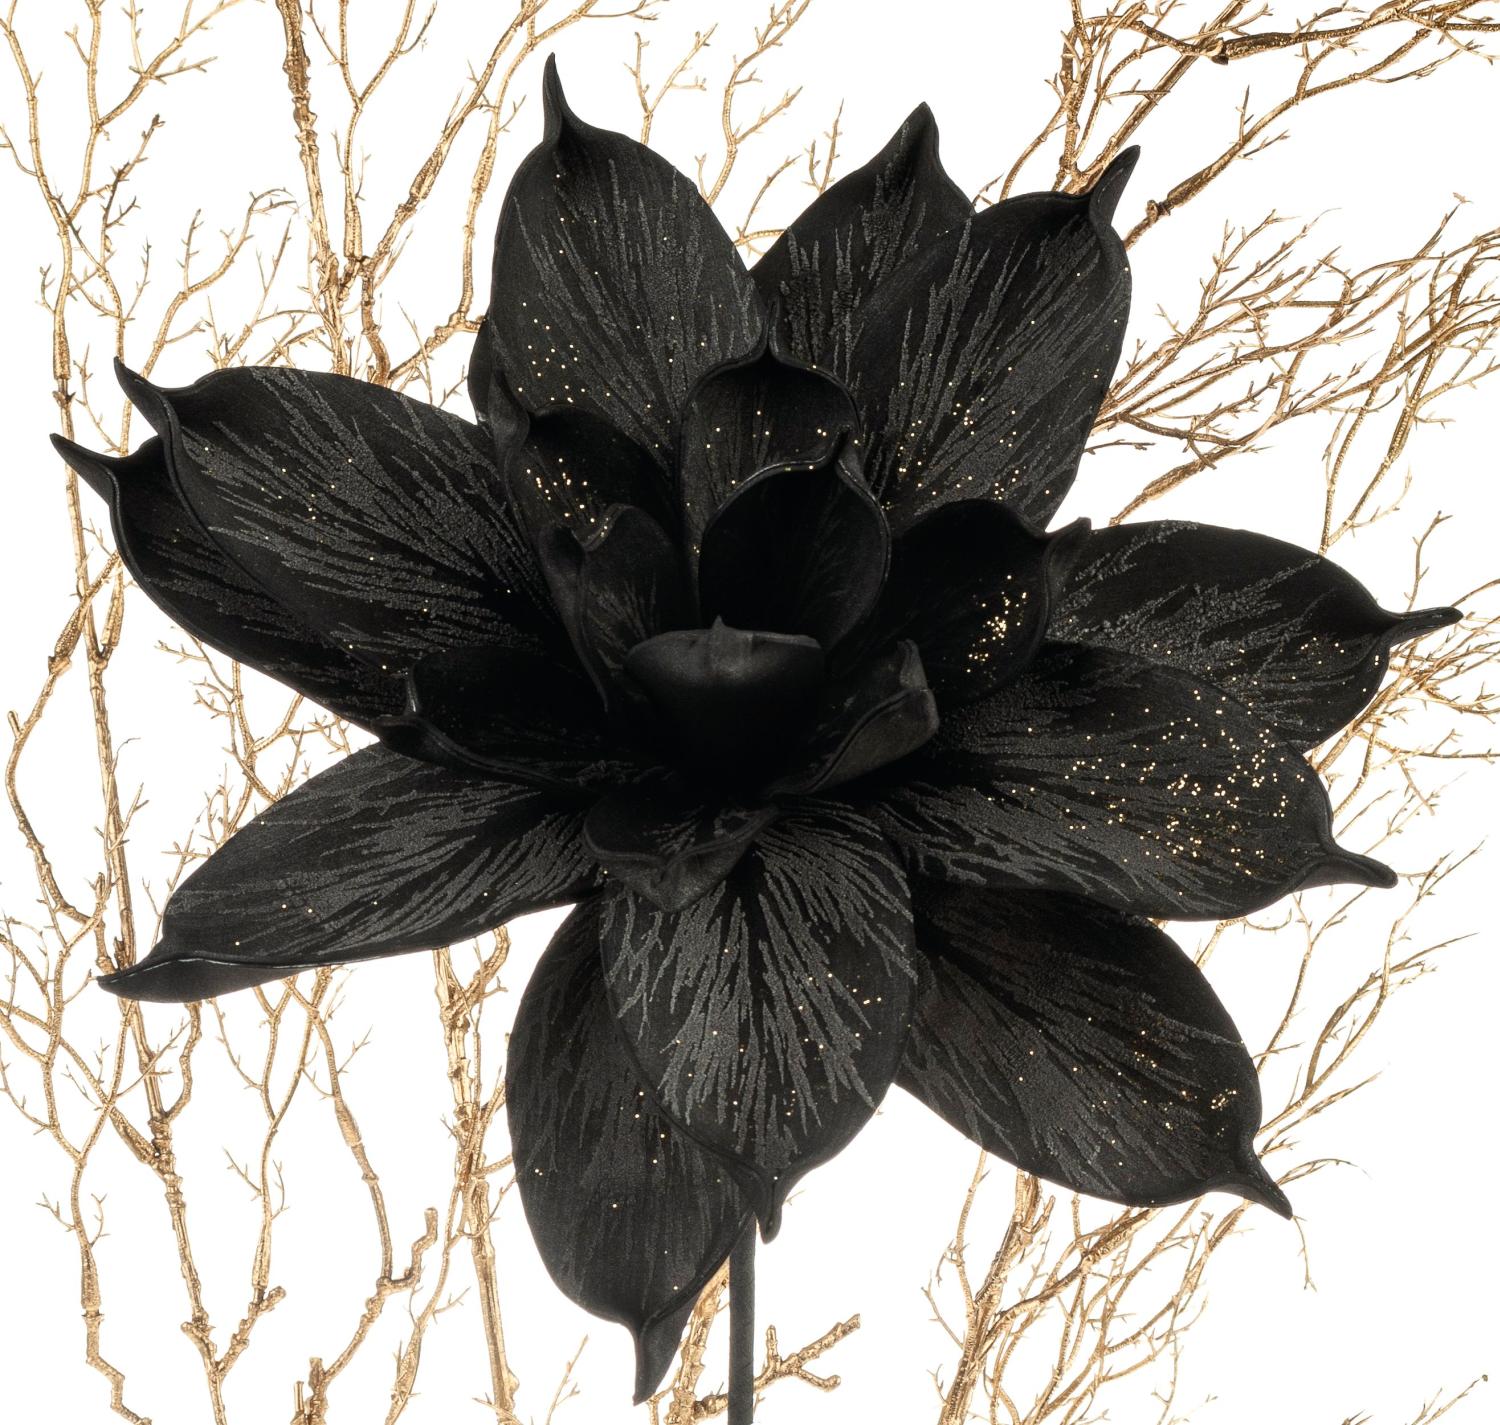 Deco soft flower 'magnolia blossom', 28 cm, black